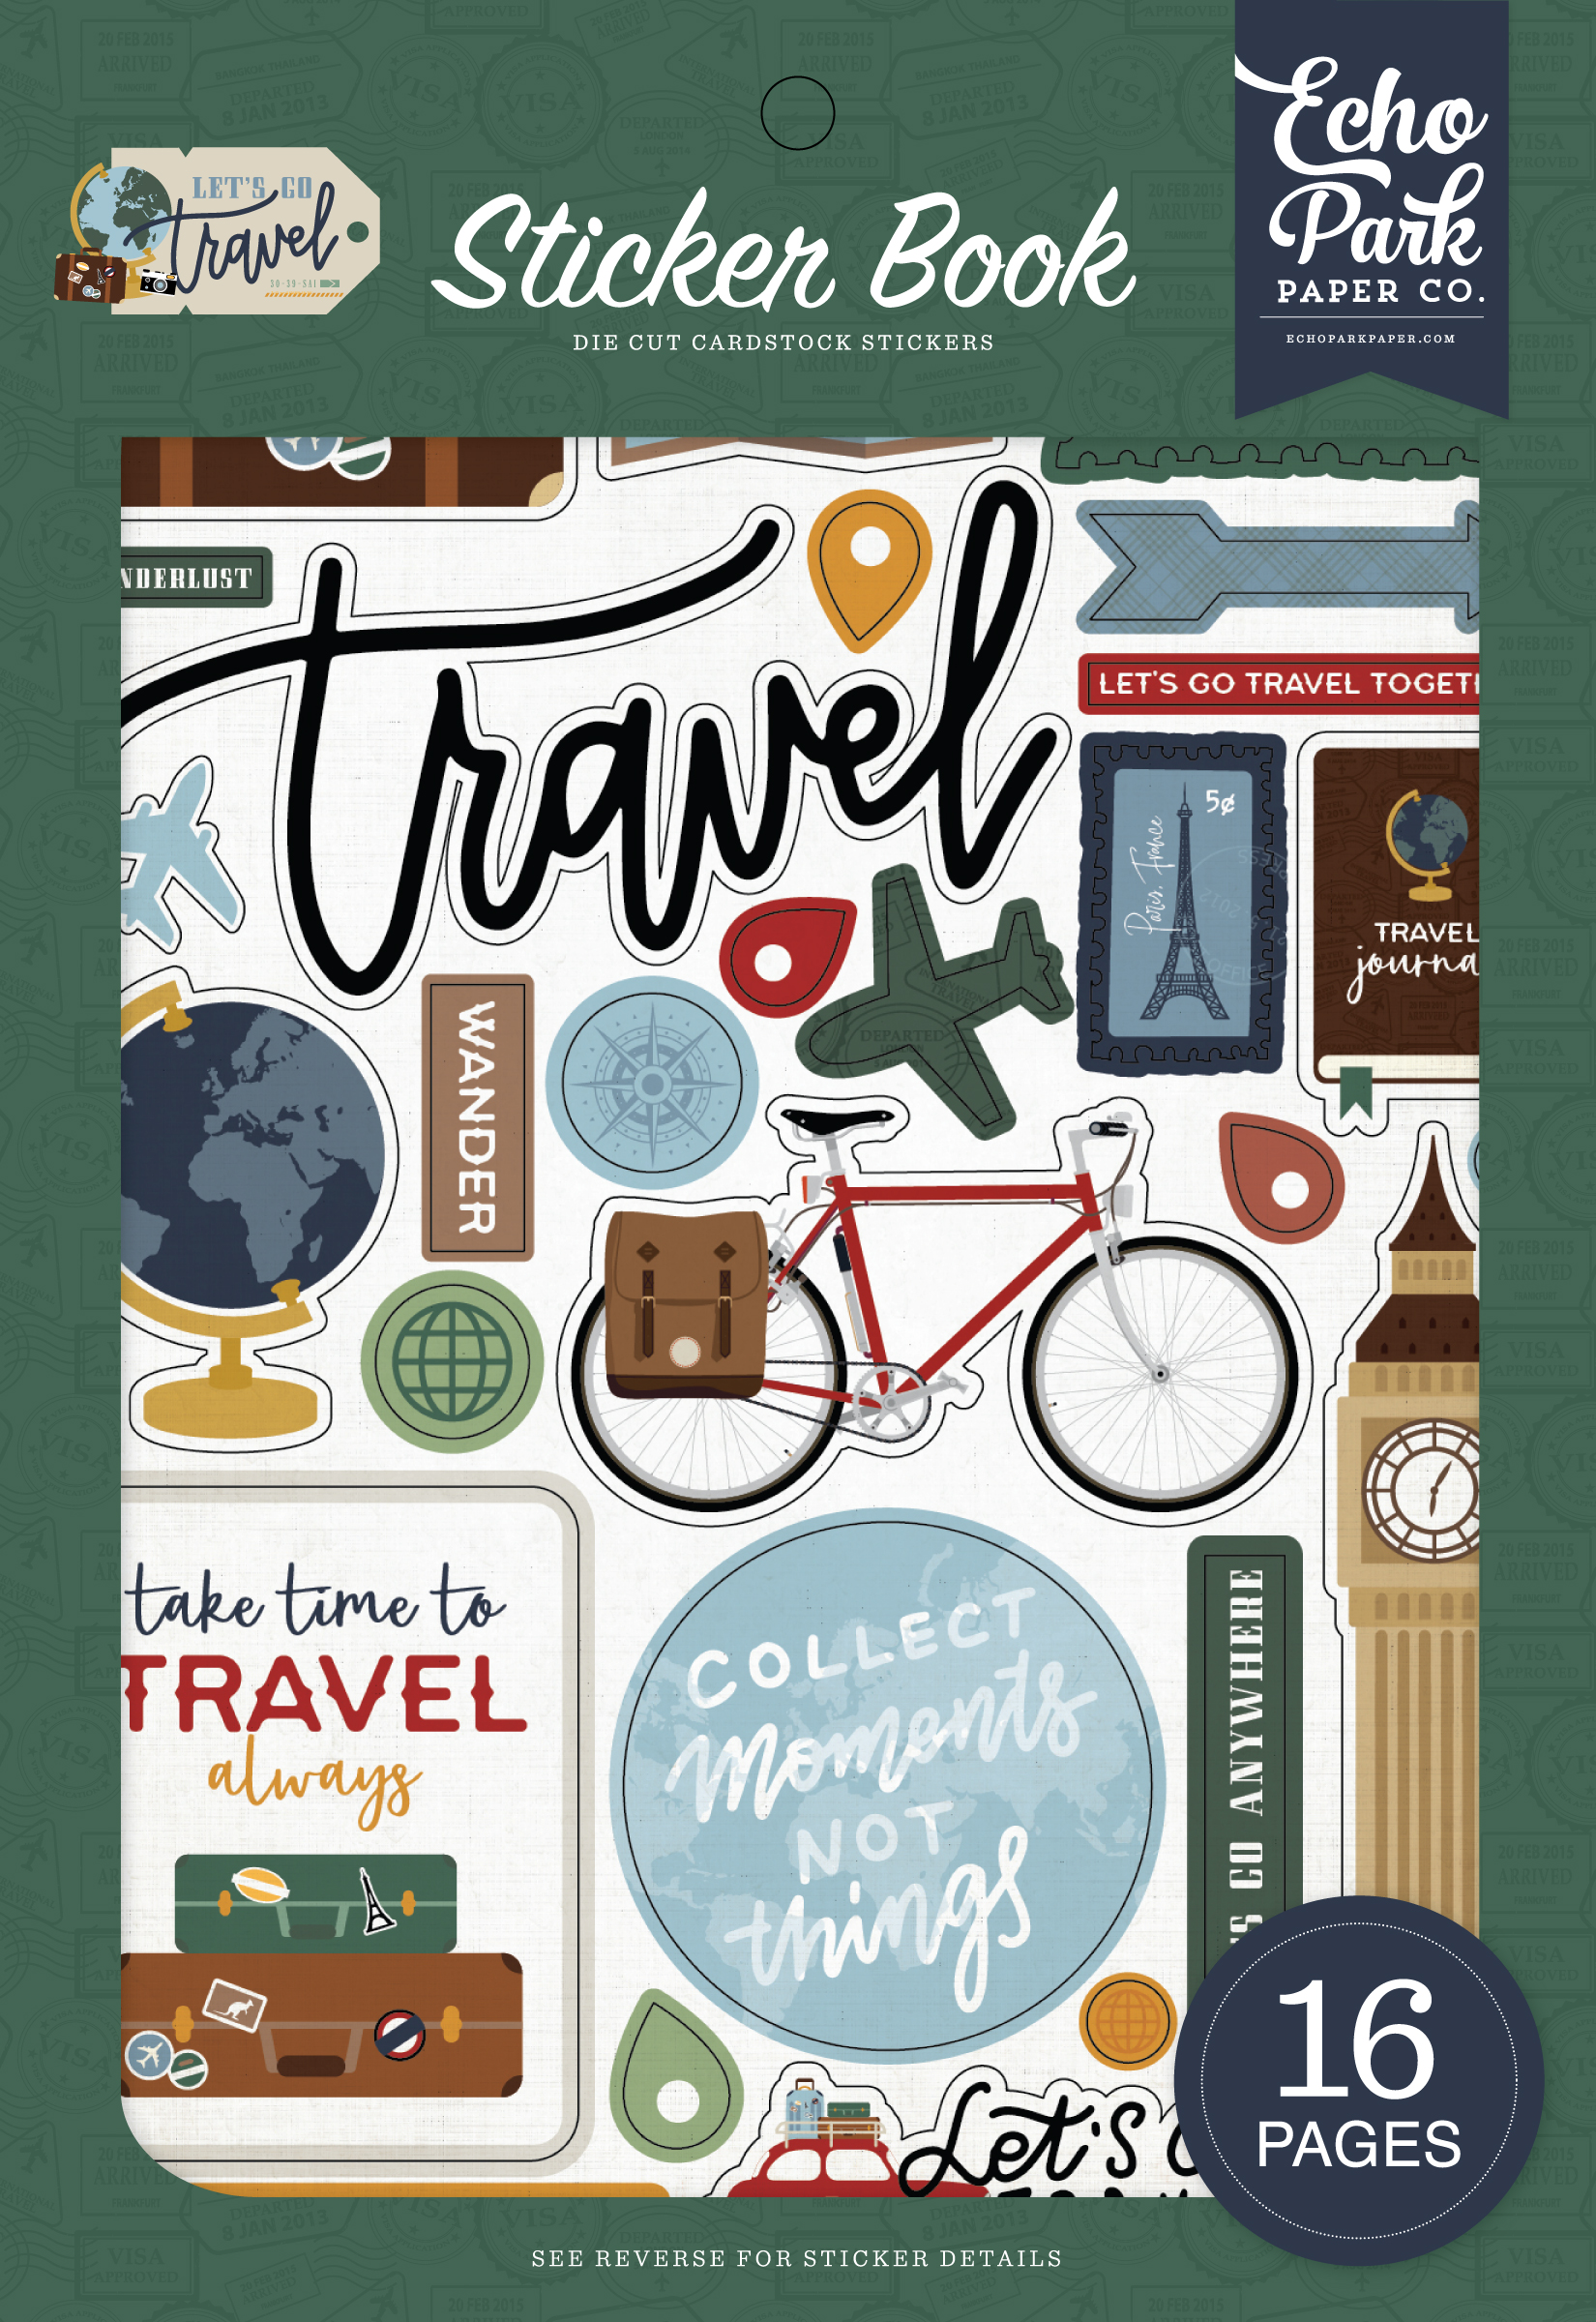 Let's Go Travel Sticker Book - Echo Park Paper Co.